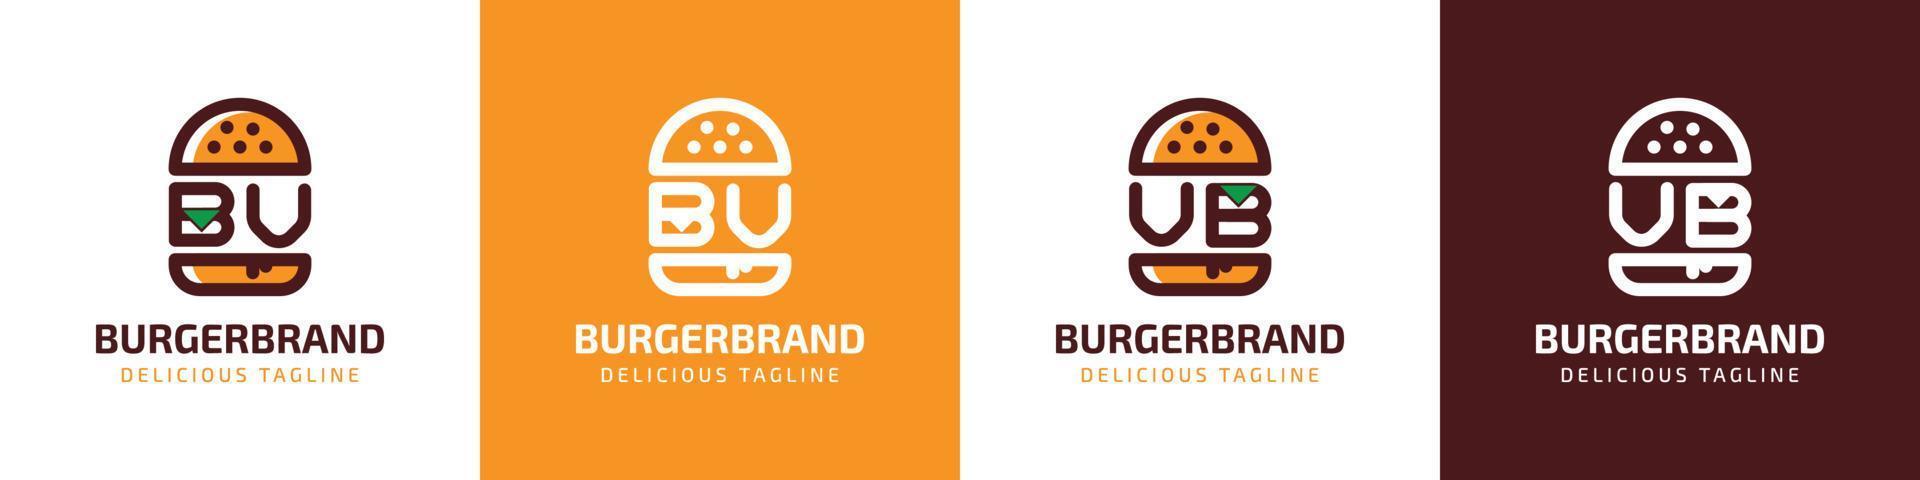 lettera bv e vb hamburger logo, adatto per qualunque attività commerciale relazionato per hamburger con bv o vb iniziali. vettore